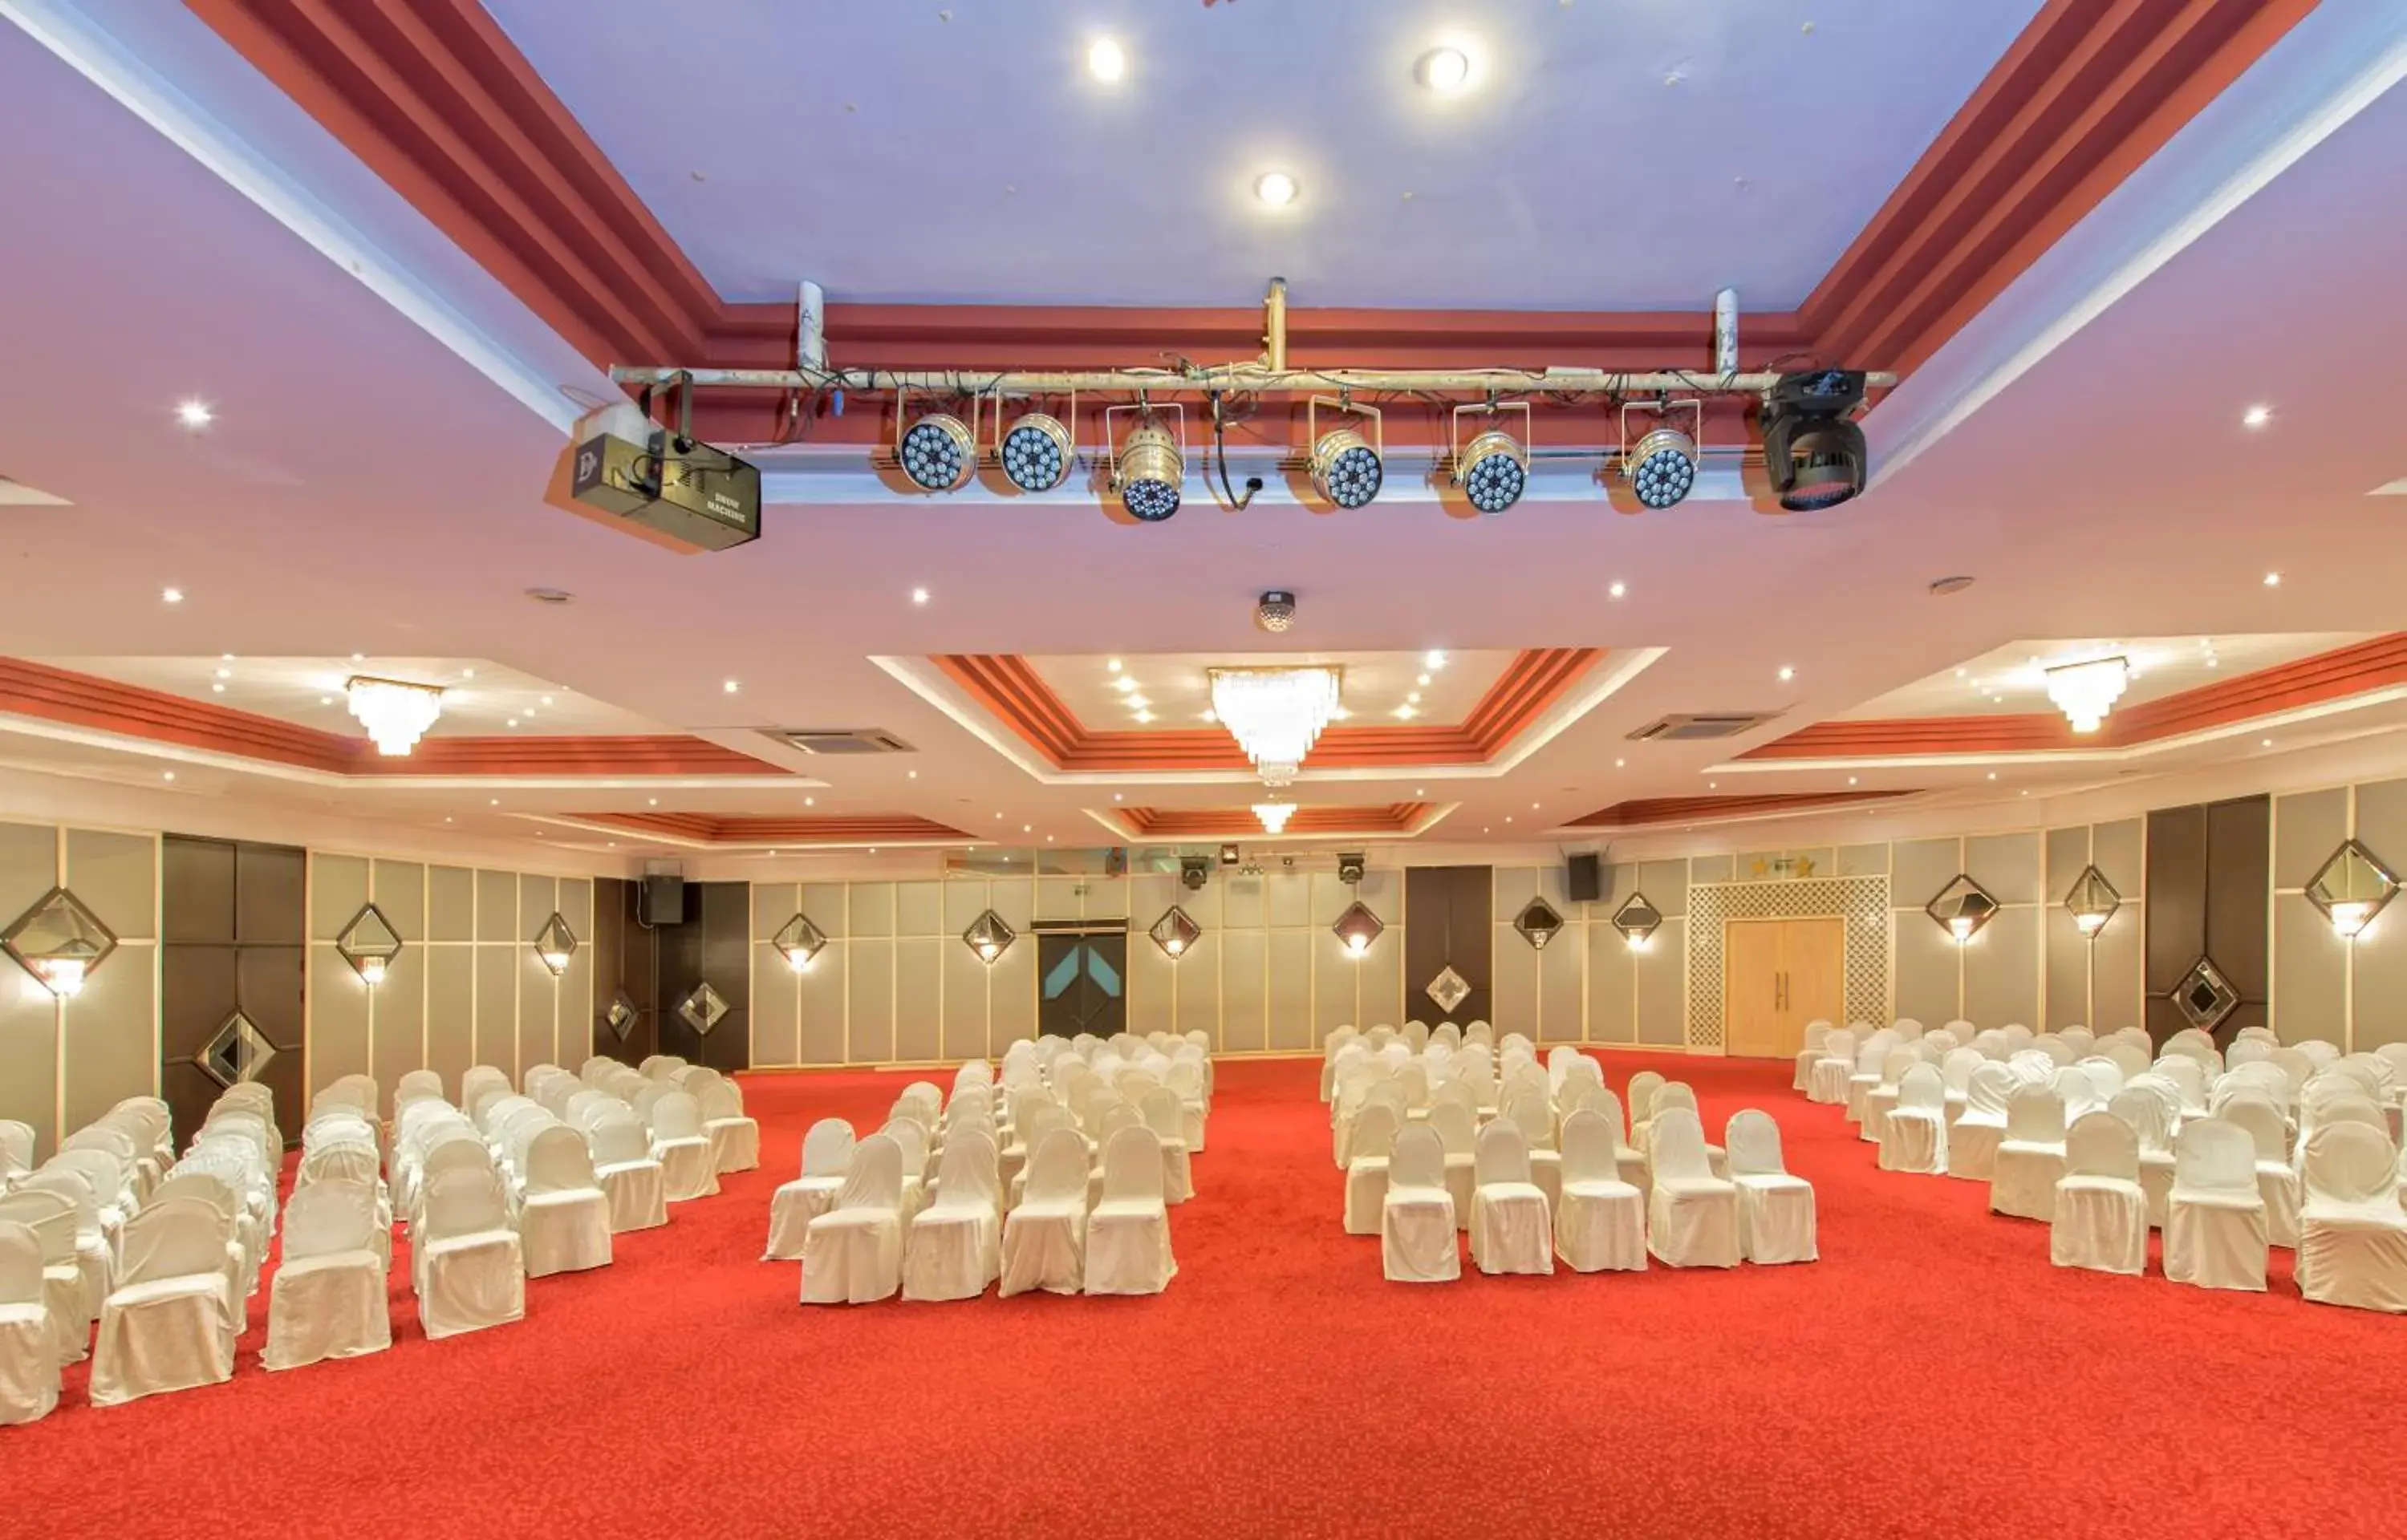 Banquet/Function facilities, Banquet Facilities in Adonis Hotel